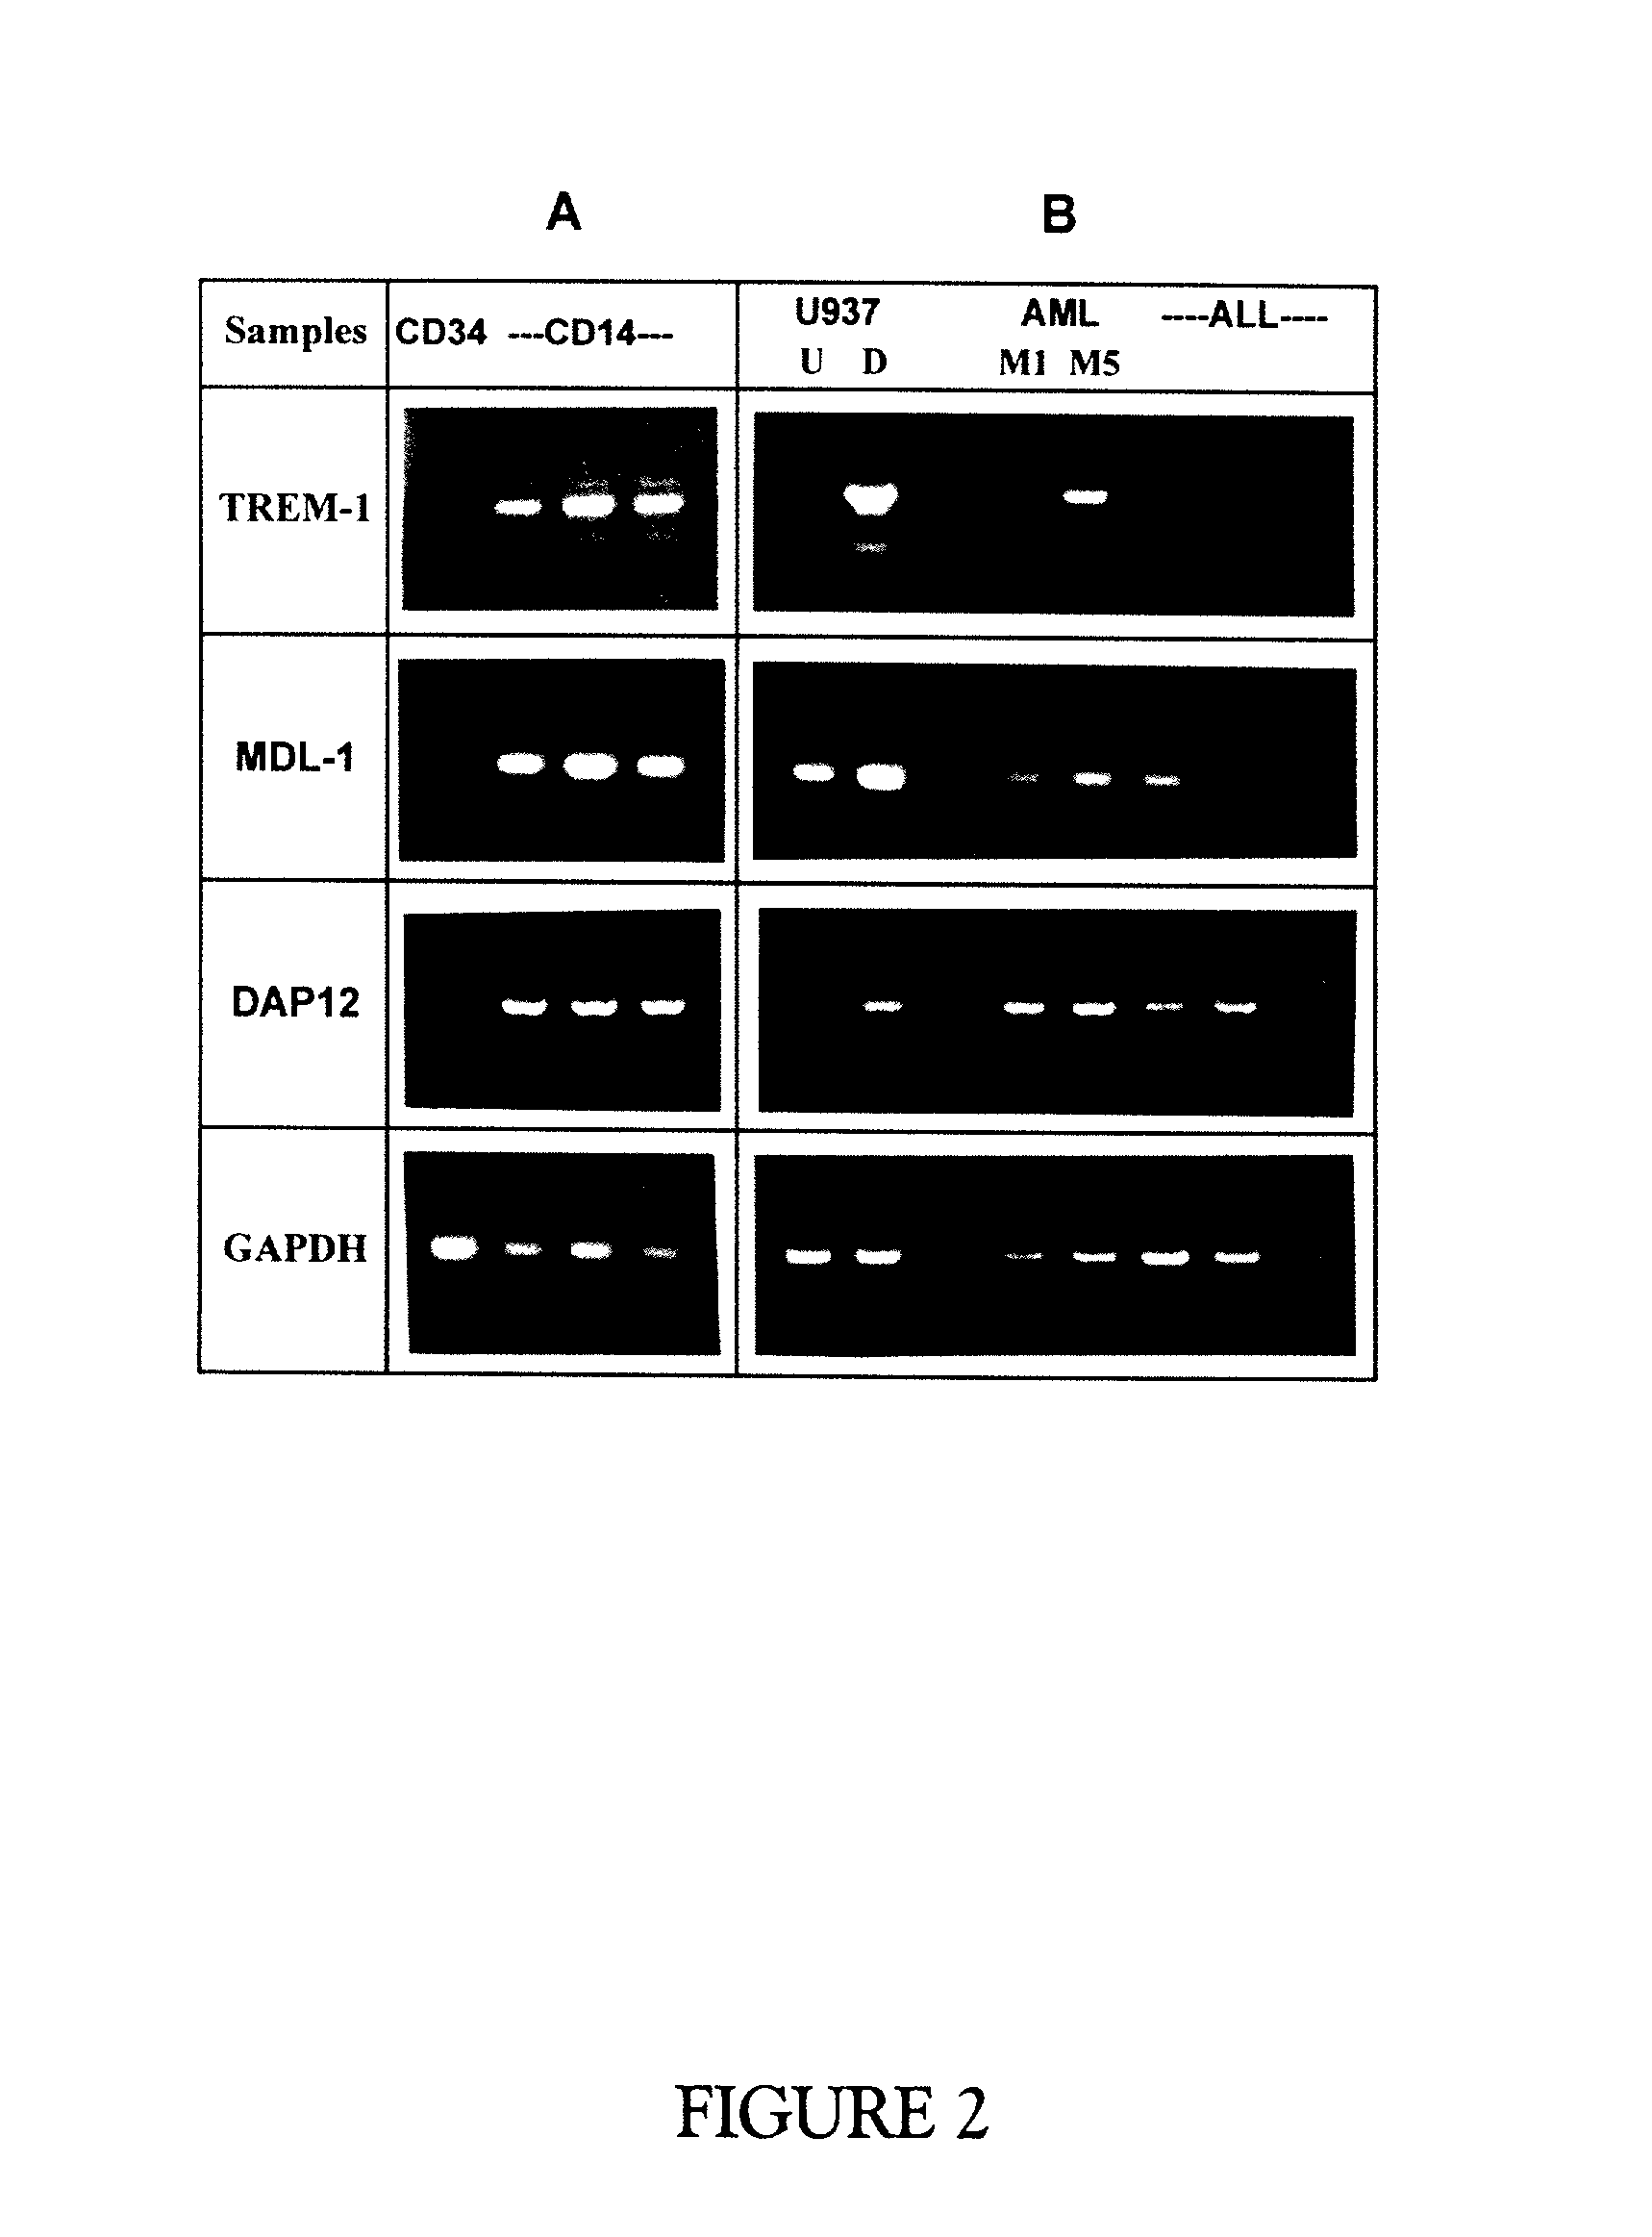 Trem-1 splice variant for use in modifying immune responses